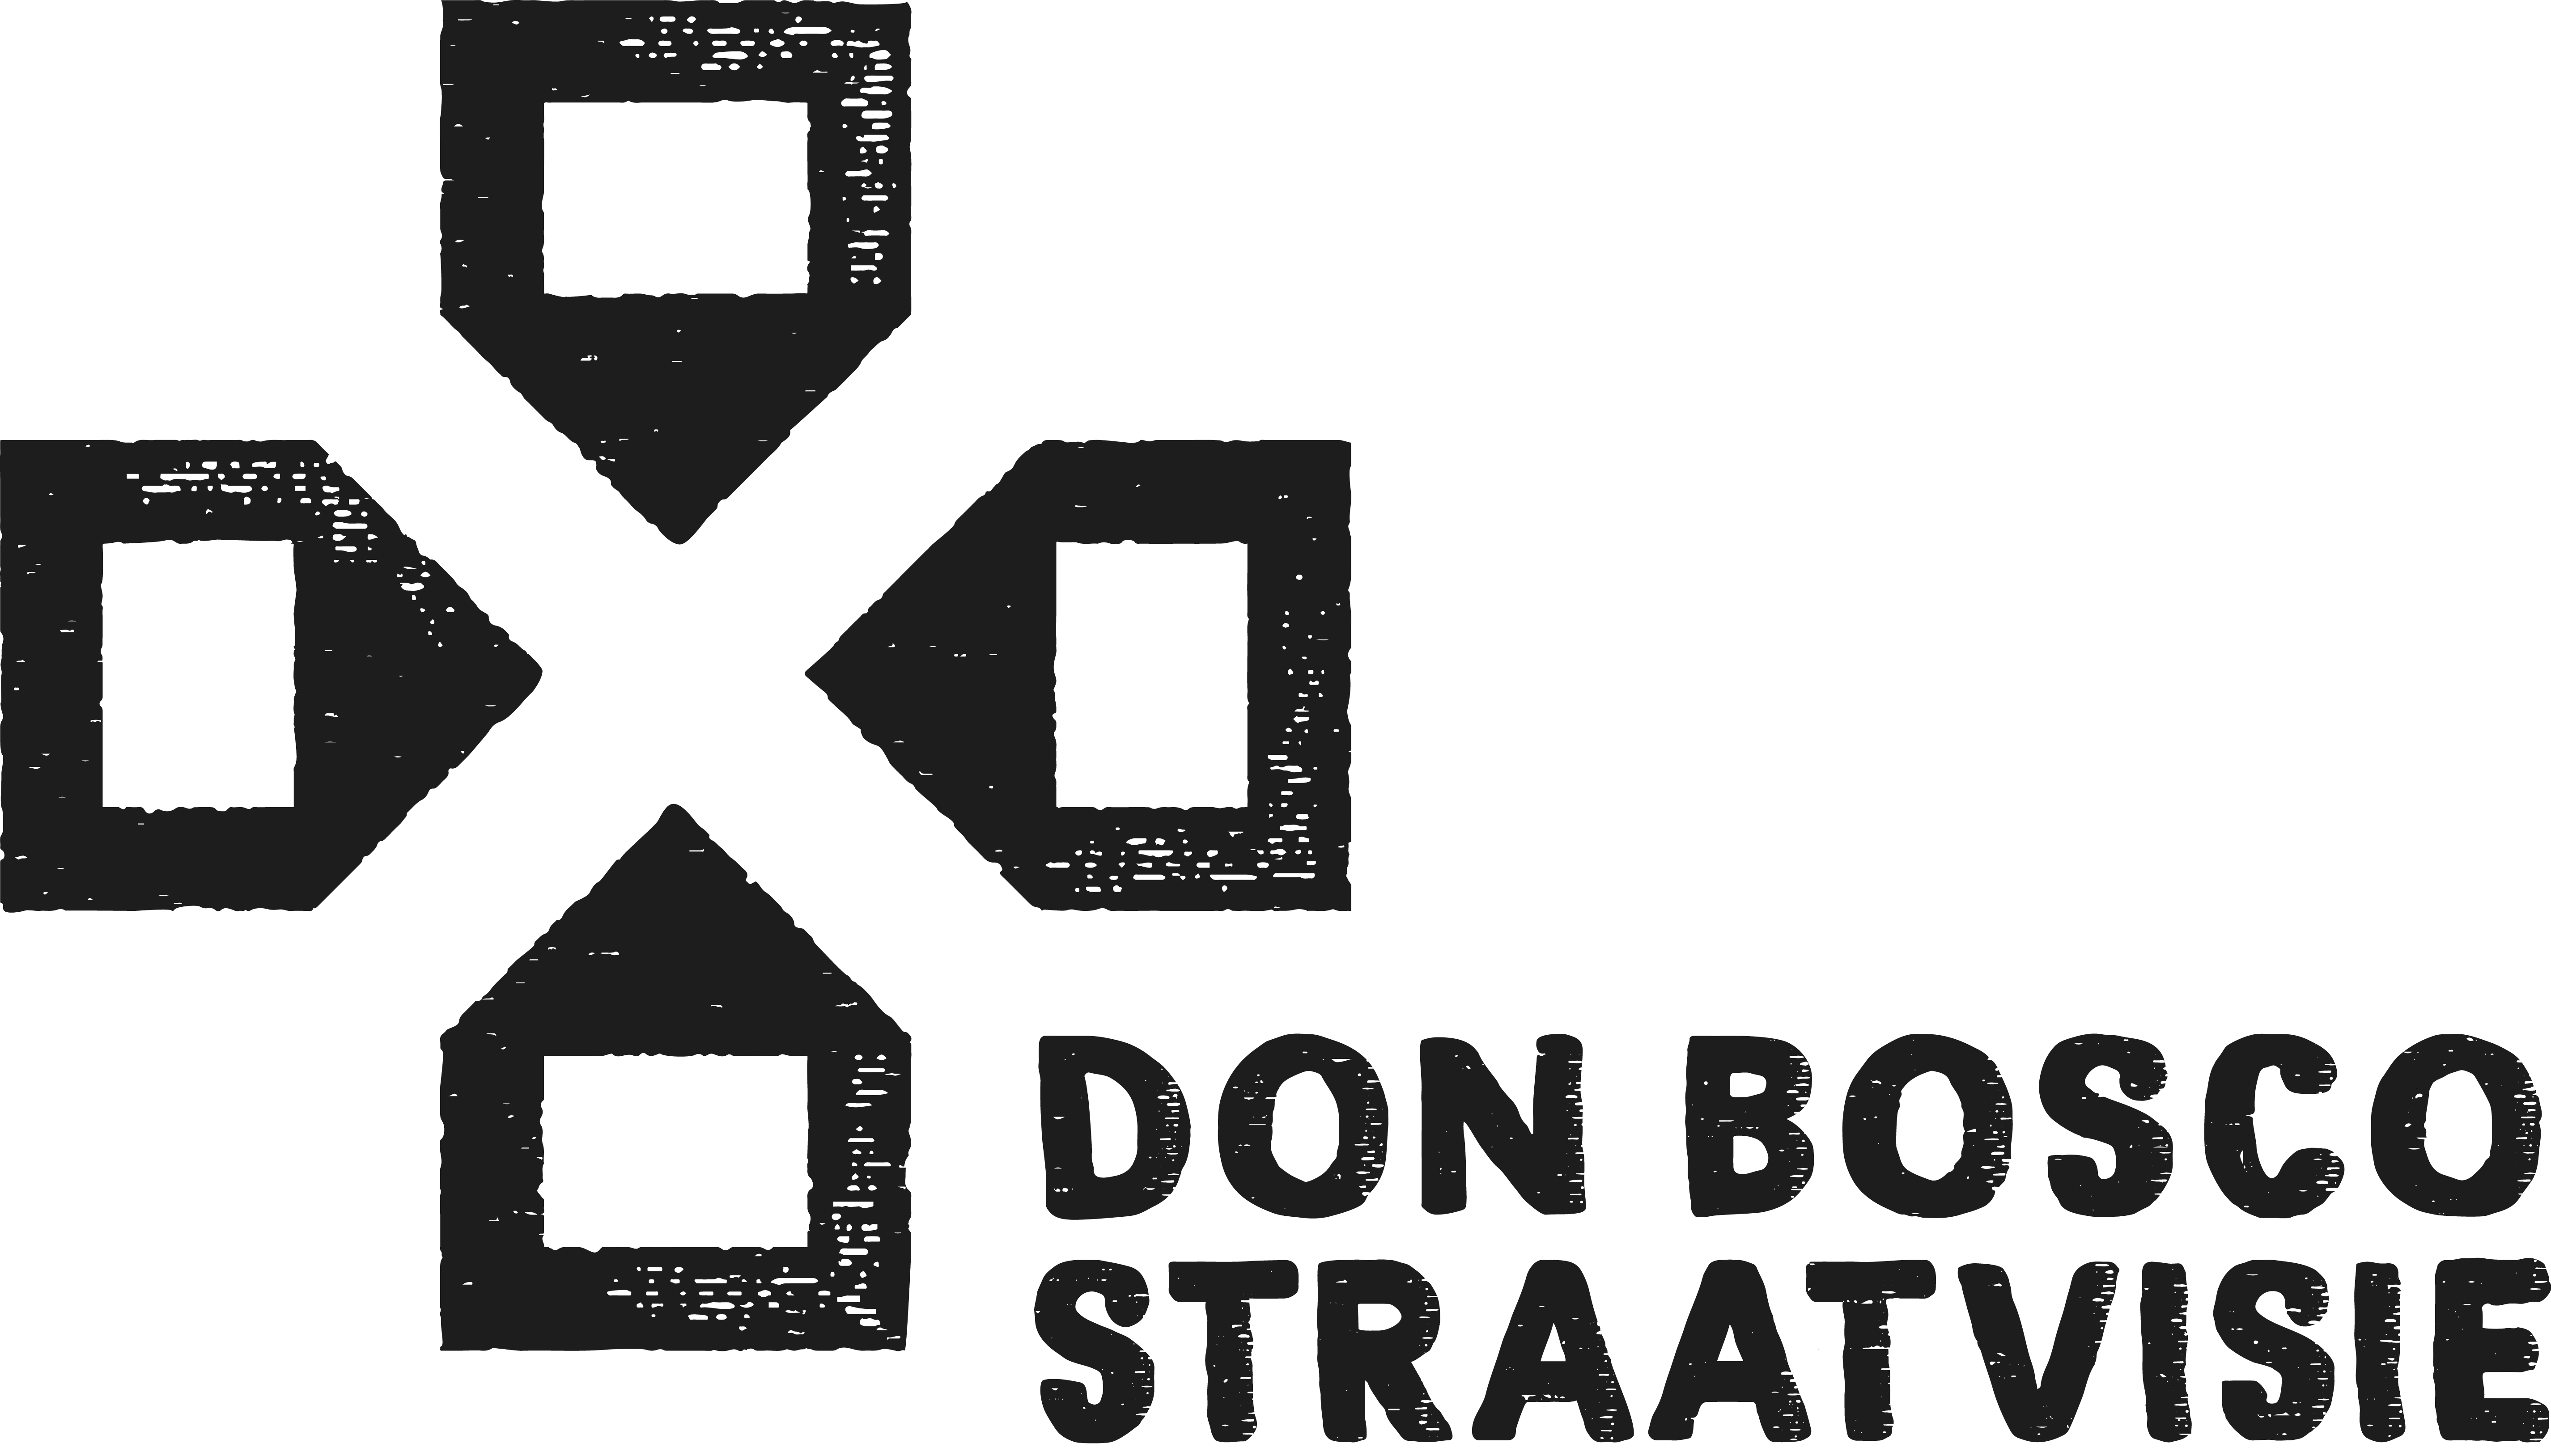 Don Bosco Straatvisie